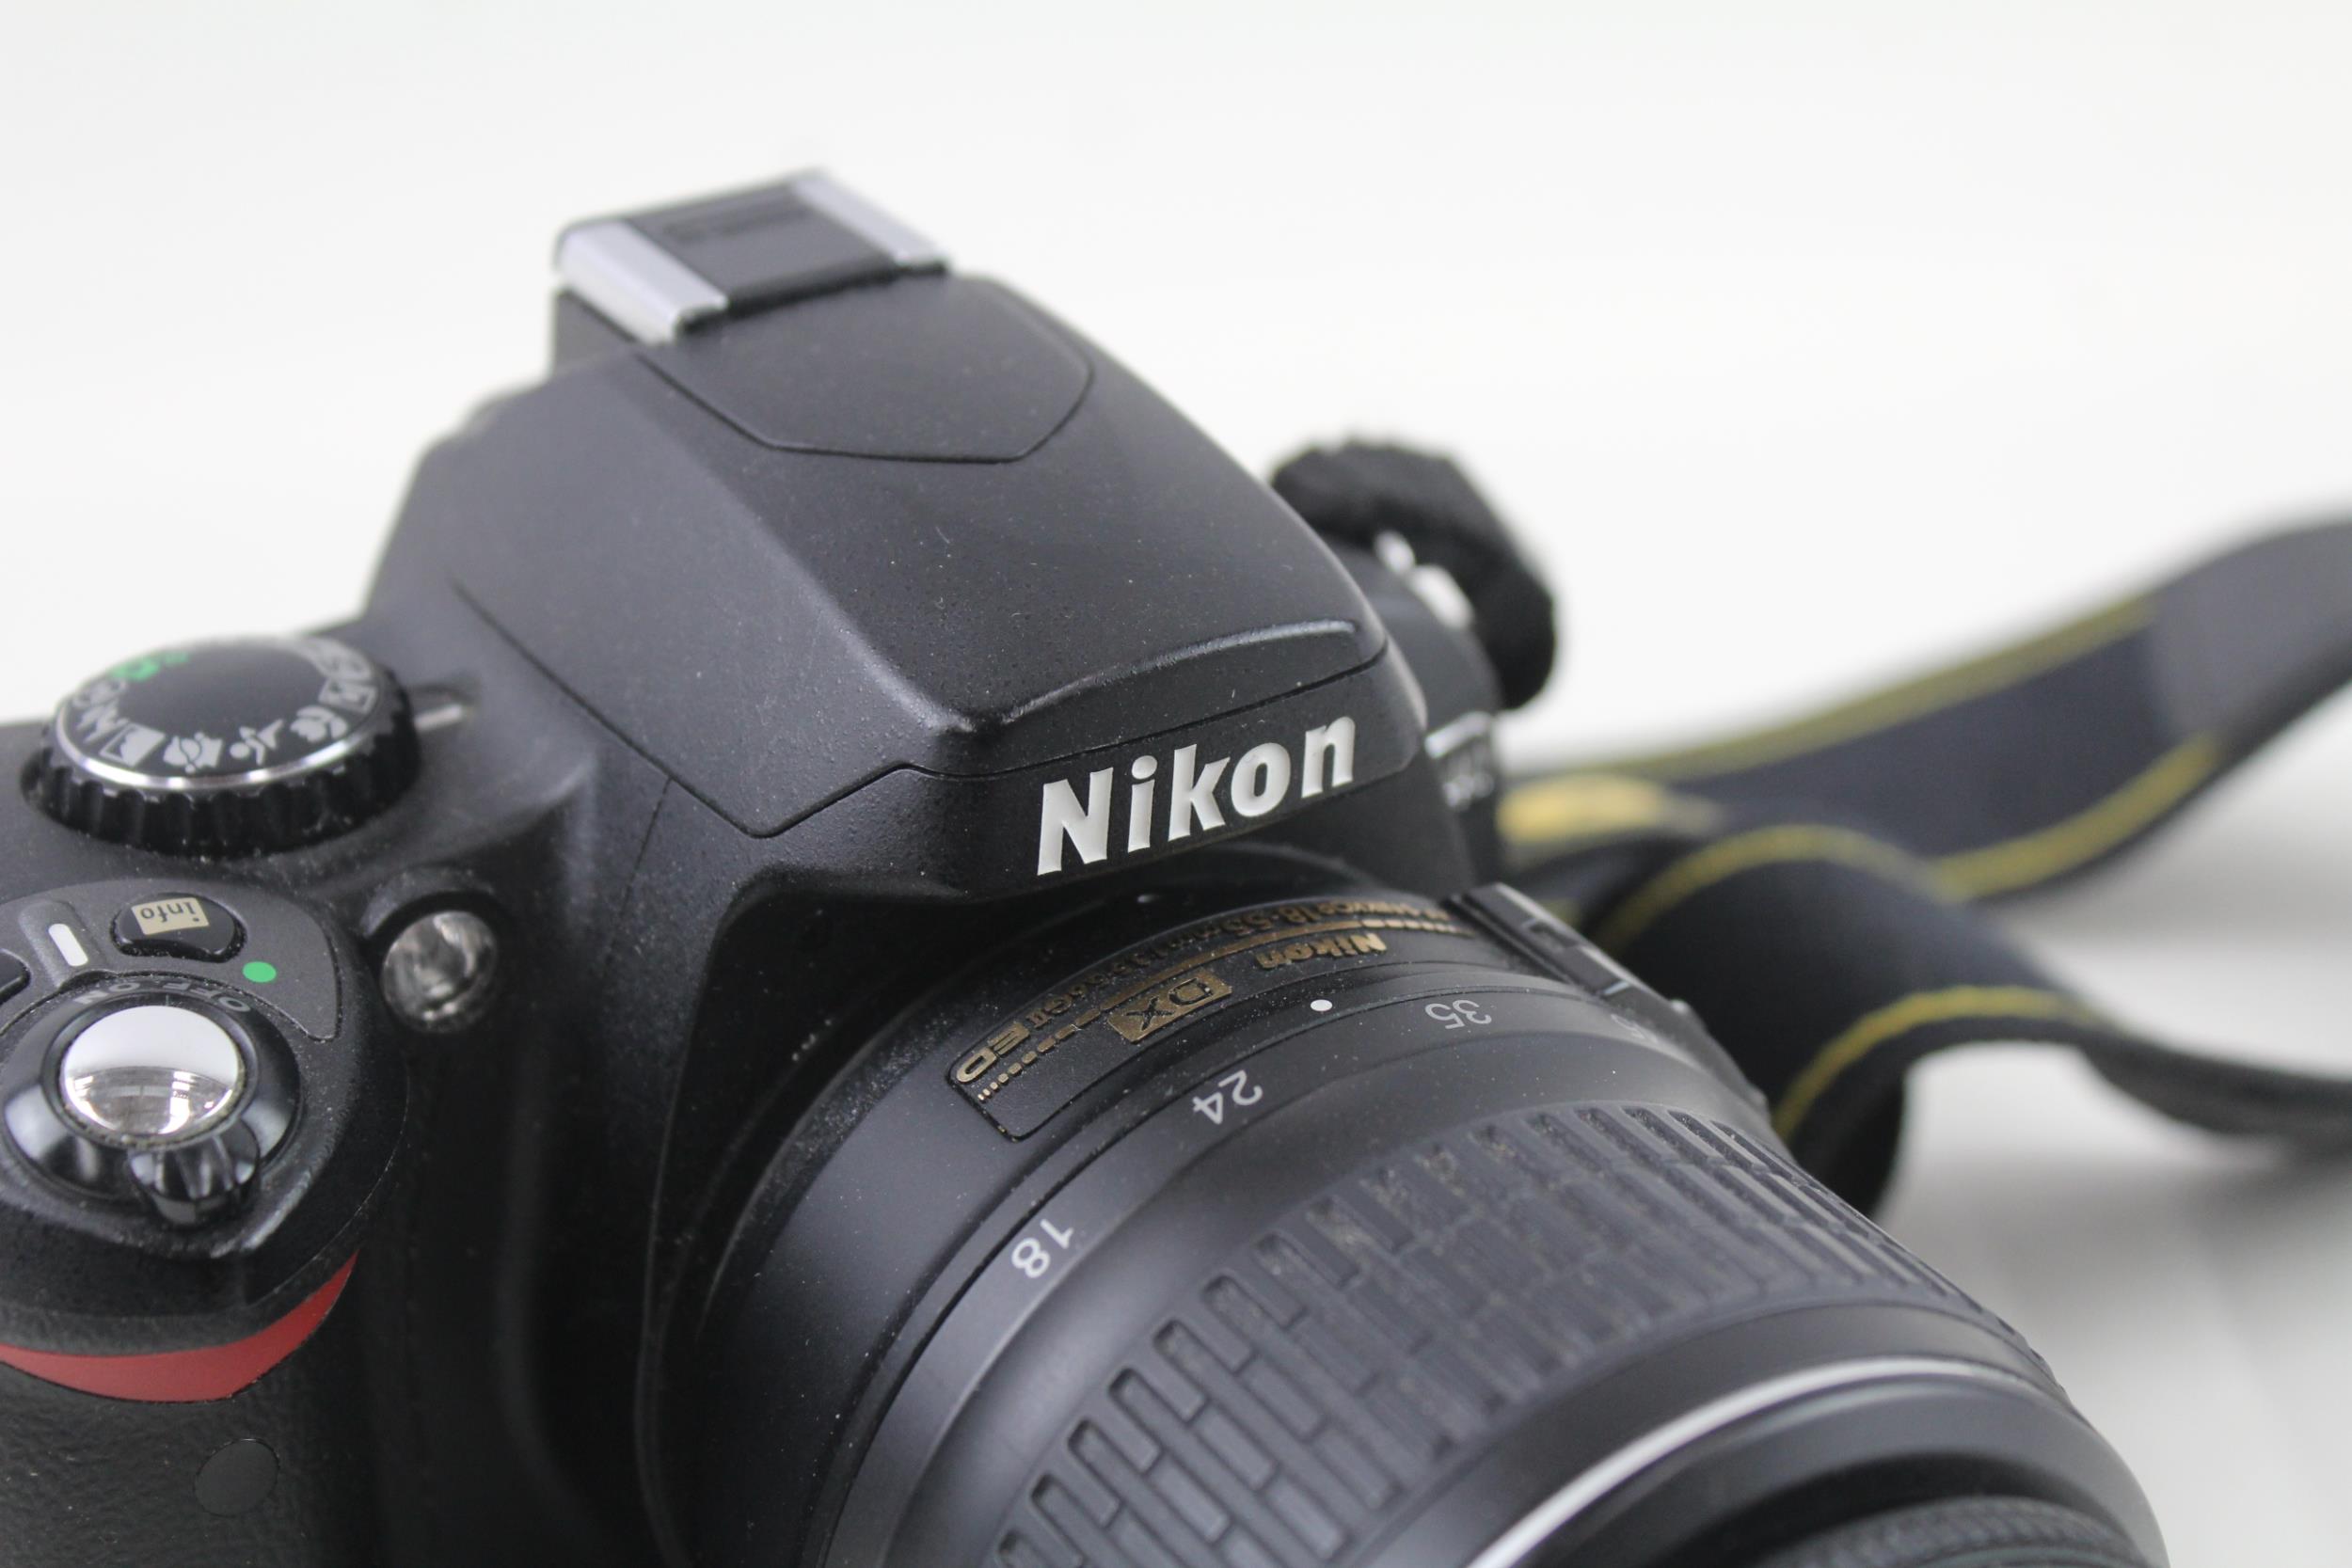 Nikon D40 DSLR Digital Camera Working w/ Nikon AF Nikkor 18-55mm F/3.5-5.6 - Nikon D40 DSLR - Image 3 of 7